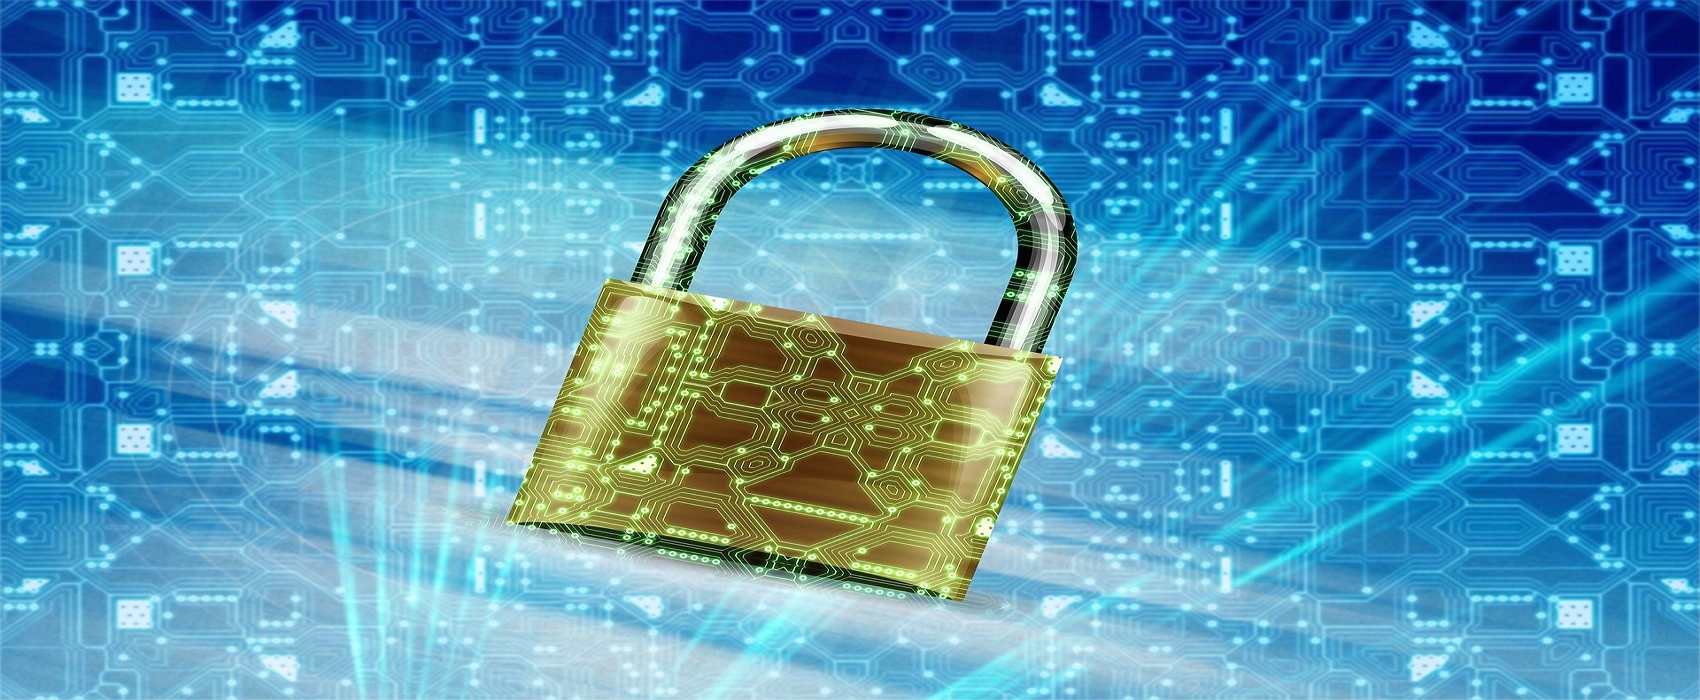 Futura vous explique comment savoir si un VPN est vraiment sécurisé. © Jan Alexander de Pixabay